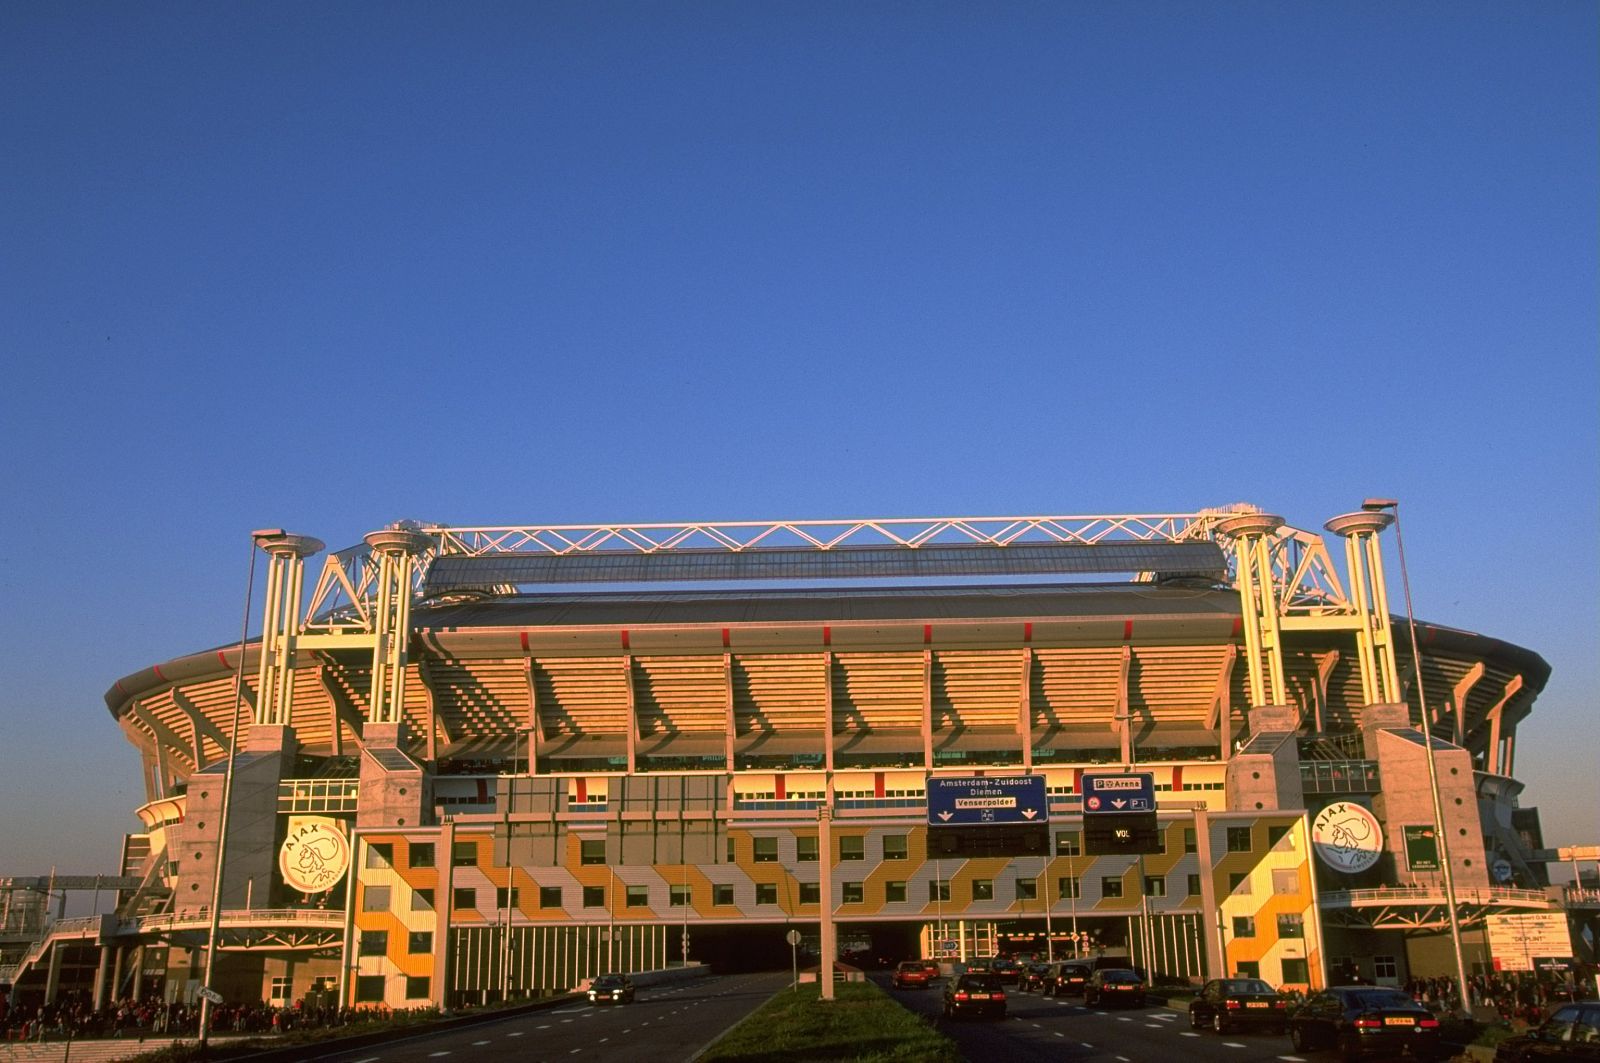 Vista general del estadio Amsterdam Arena desde el exterior